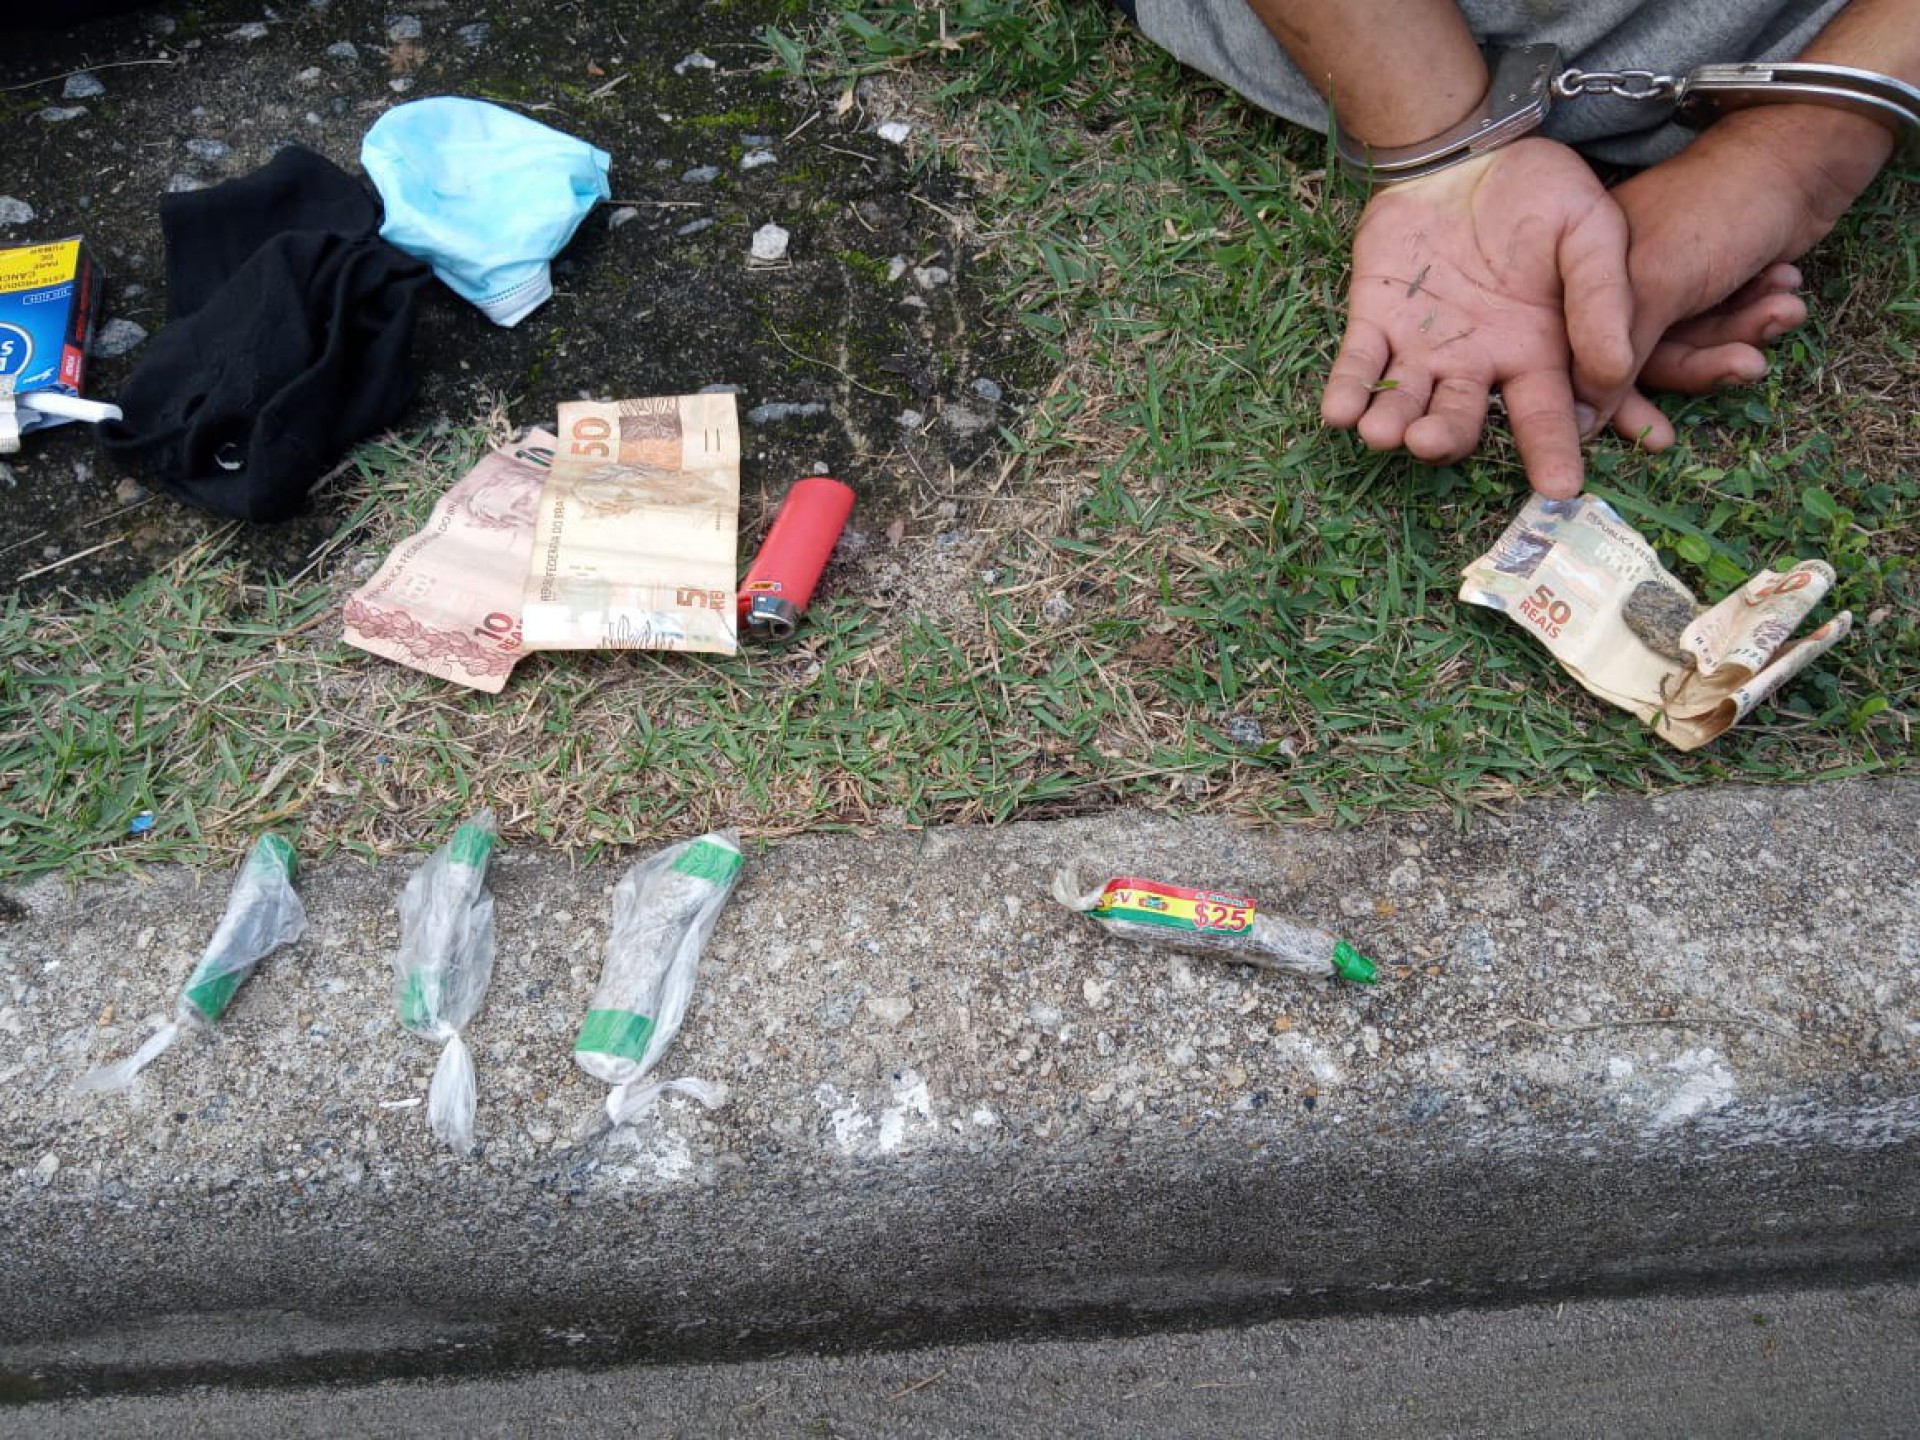 Com os suspeitos foram encontrados quatro tabletes de erva seca prensada e 167,00 reais - Divulgação